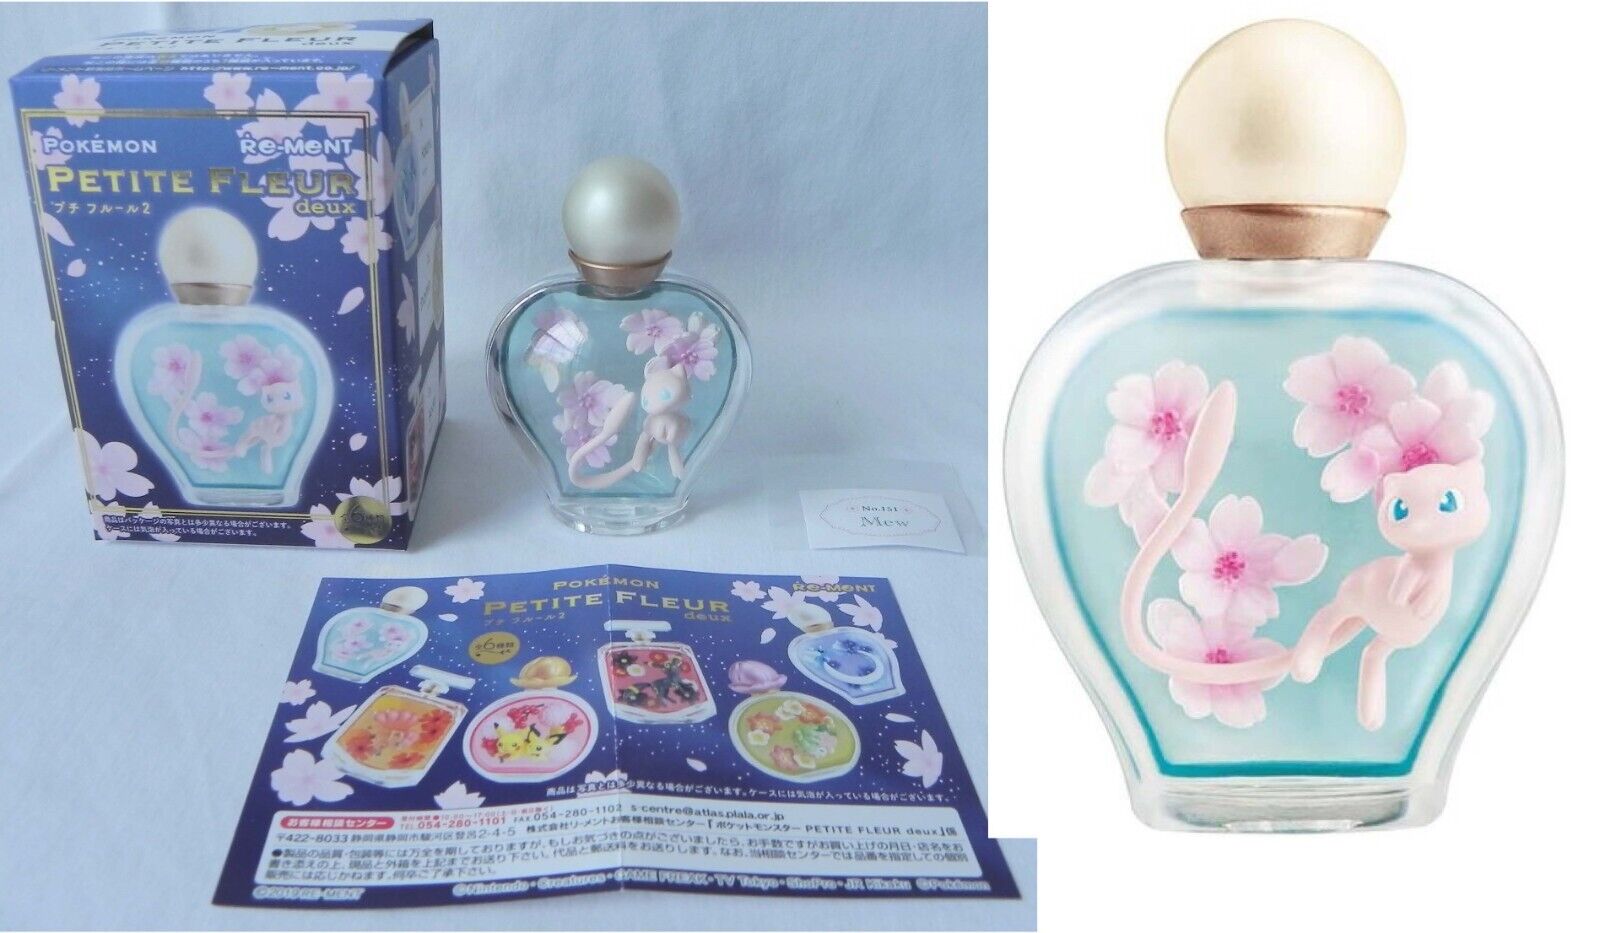 Pokemon Petite Fleur Deux Mew Figure Re-ment, Adult Owned, Perfume Bottle Floral